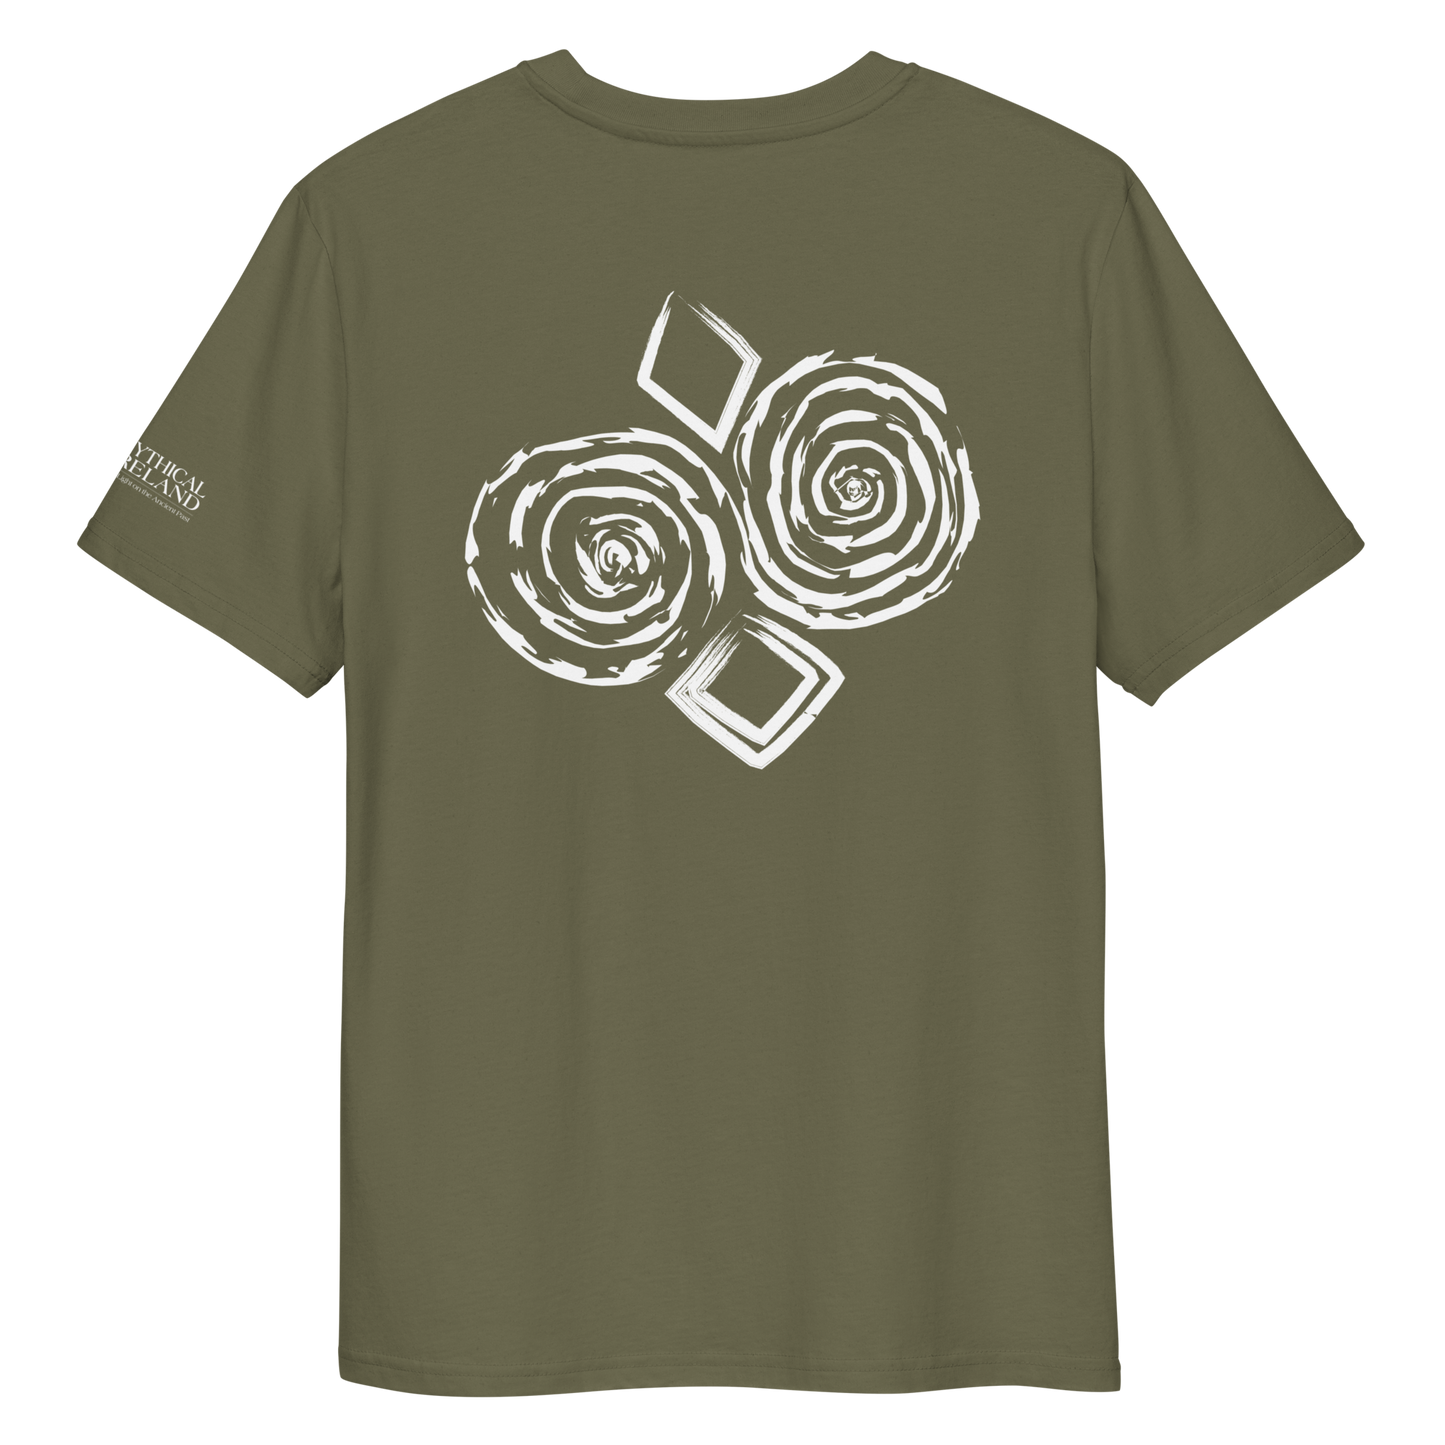 Mythical Ireland Organic Cotton K67 T-Shirt